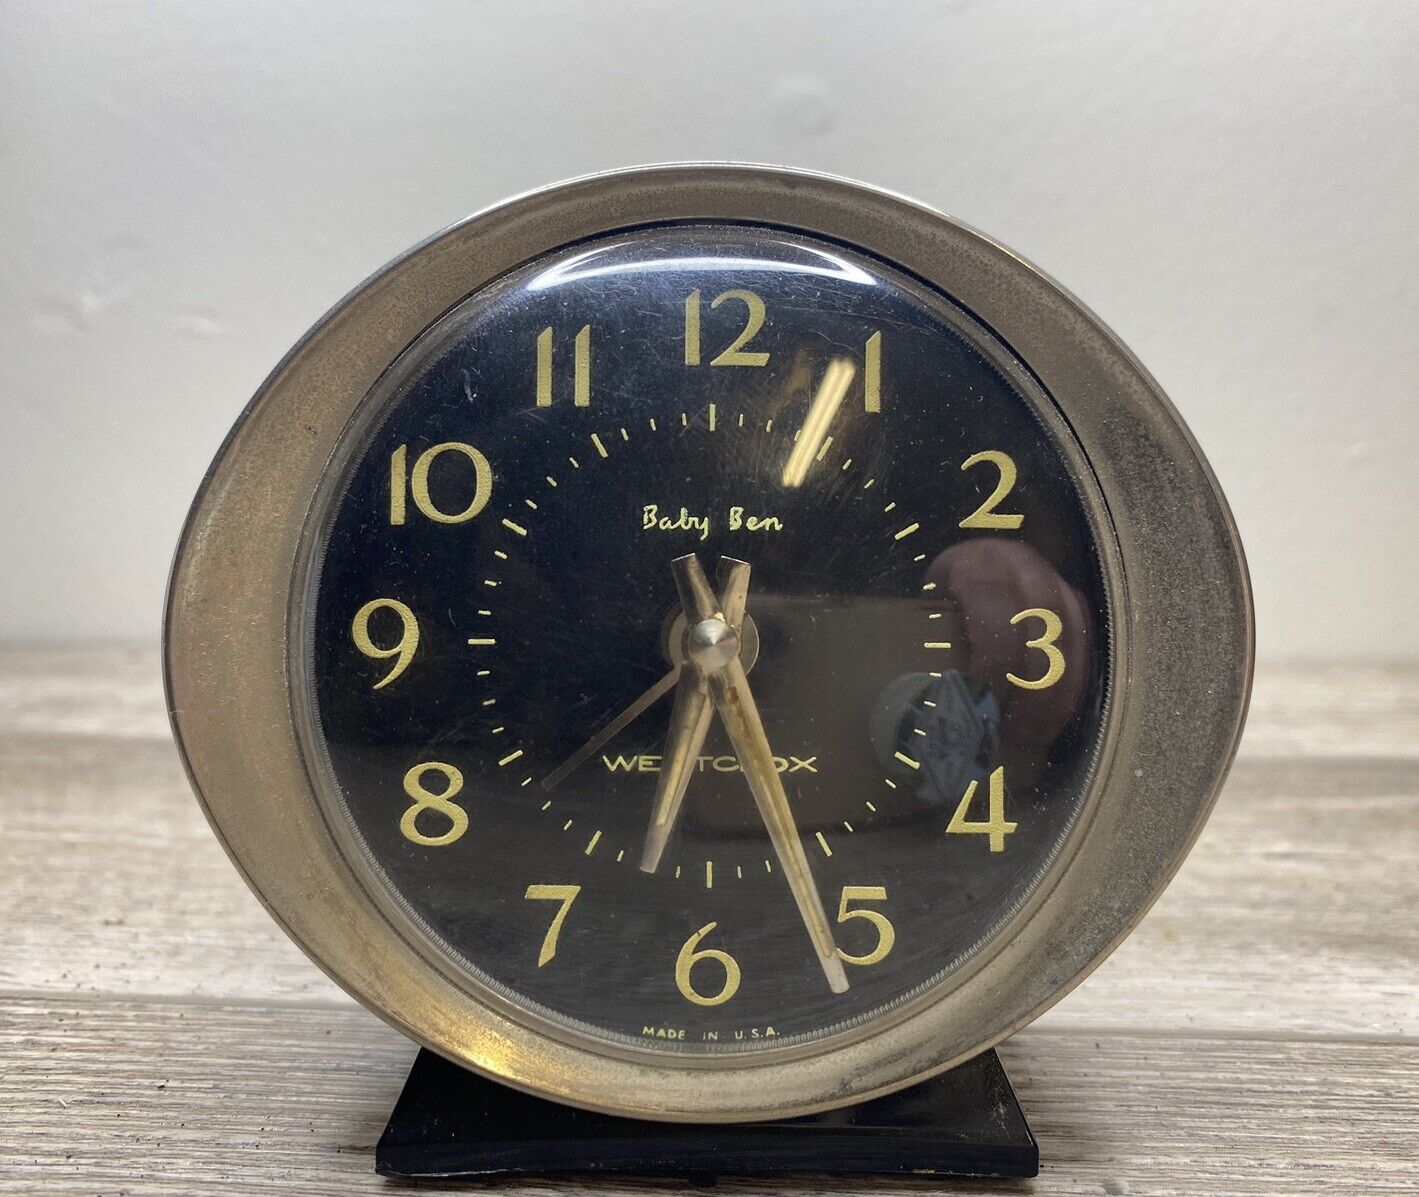 Antique Baby Ben Westclox Alarm Clock Black and Silver